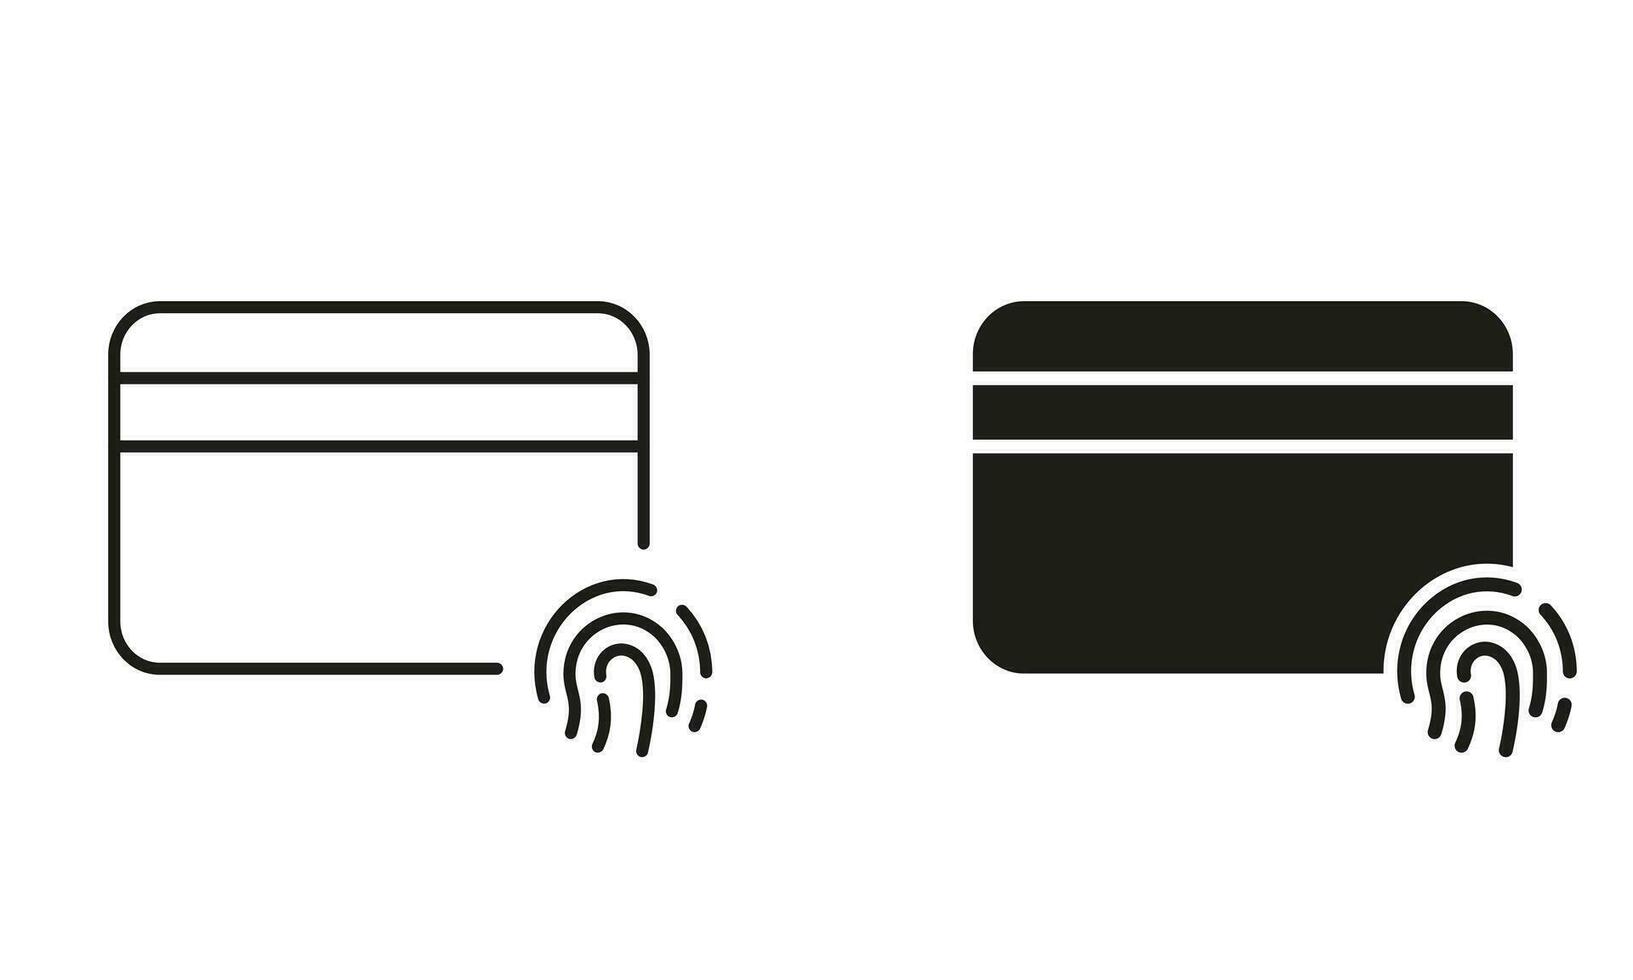 crédito tarjeta con huella dactilar línea y silueta icono colocar. identificación tecnología signo. financiero identidad por huella dactilar pictograma. el plastico tarjeta con impresión del pulgar. aislado vector ilustración.